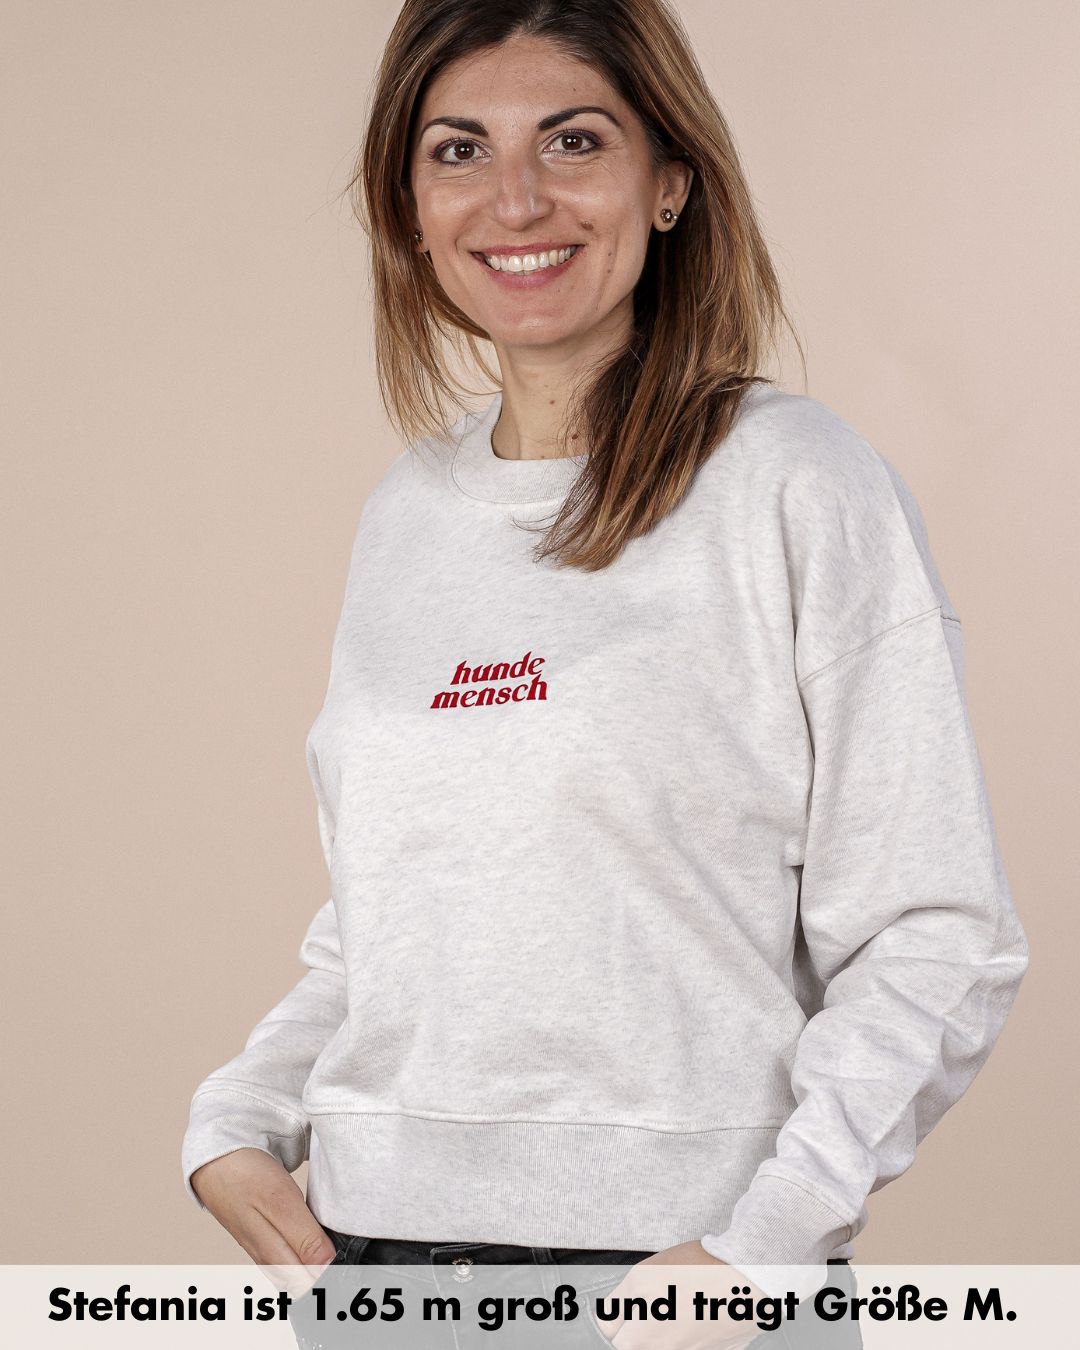 Premium Organic Sweatshirt 'Hundemensch'